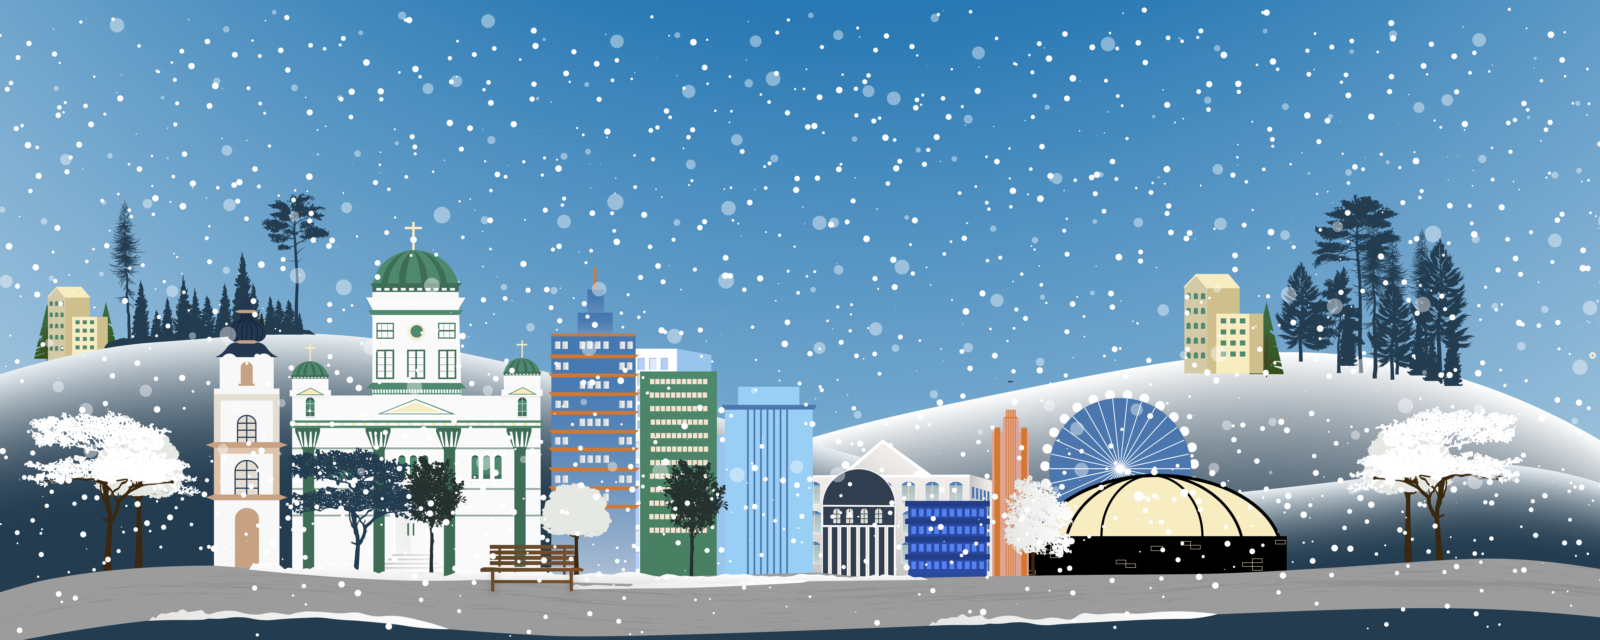 Illustrerad bild av Helsingfors i vinterskrud samt en önskan om en god jul från Stiftelsen Tre Smeder